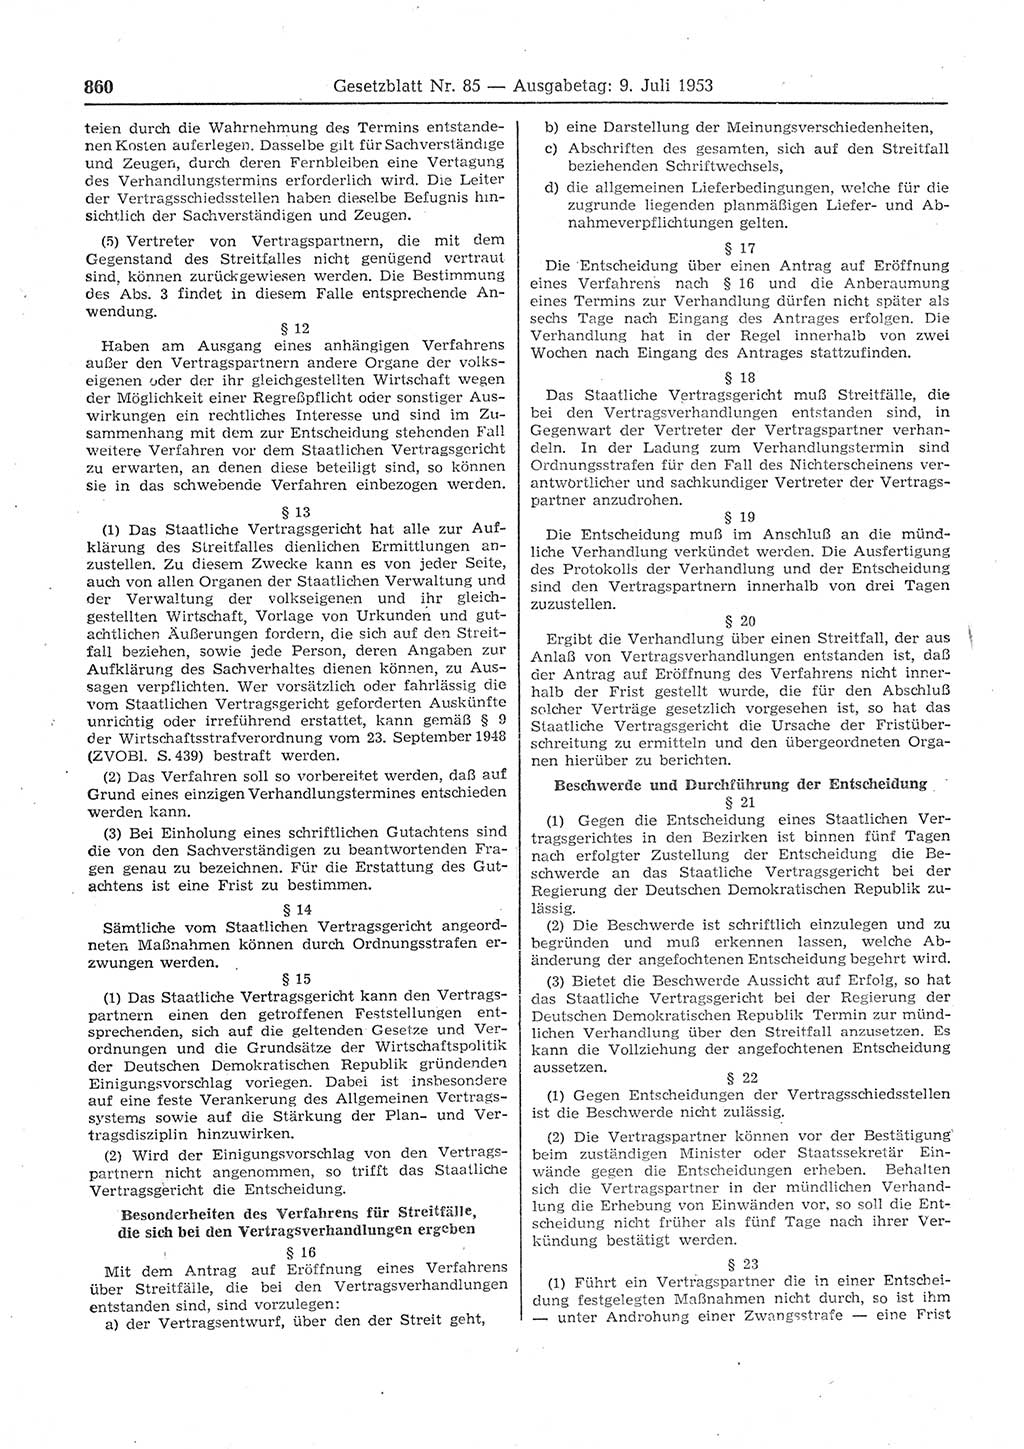 Gesetzblatt (GBl.) der Deutschen Demokratischen Republik (DDR) 1953, Seite 860 (GBl. DDR 1953, S. 860)